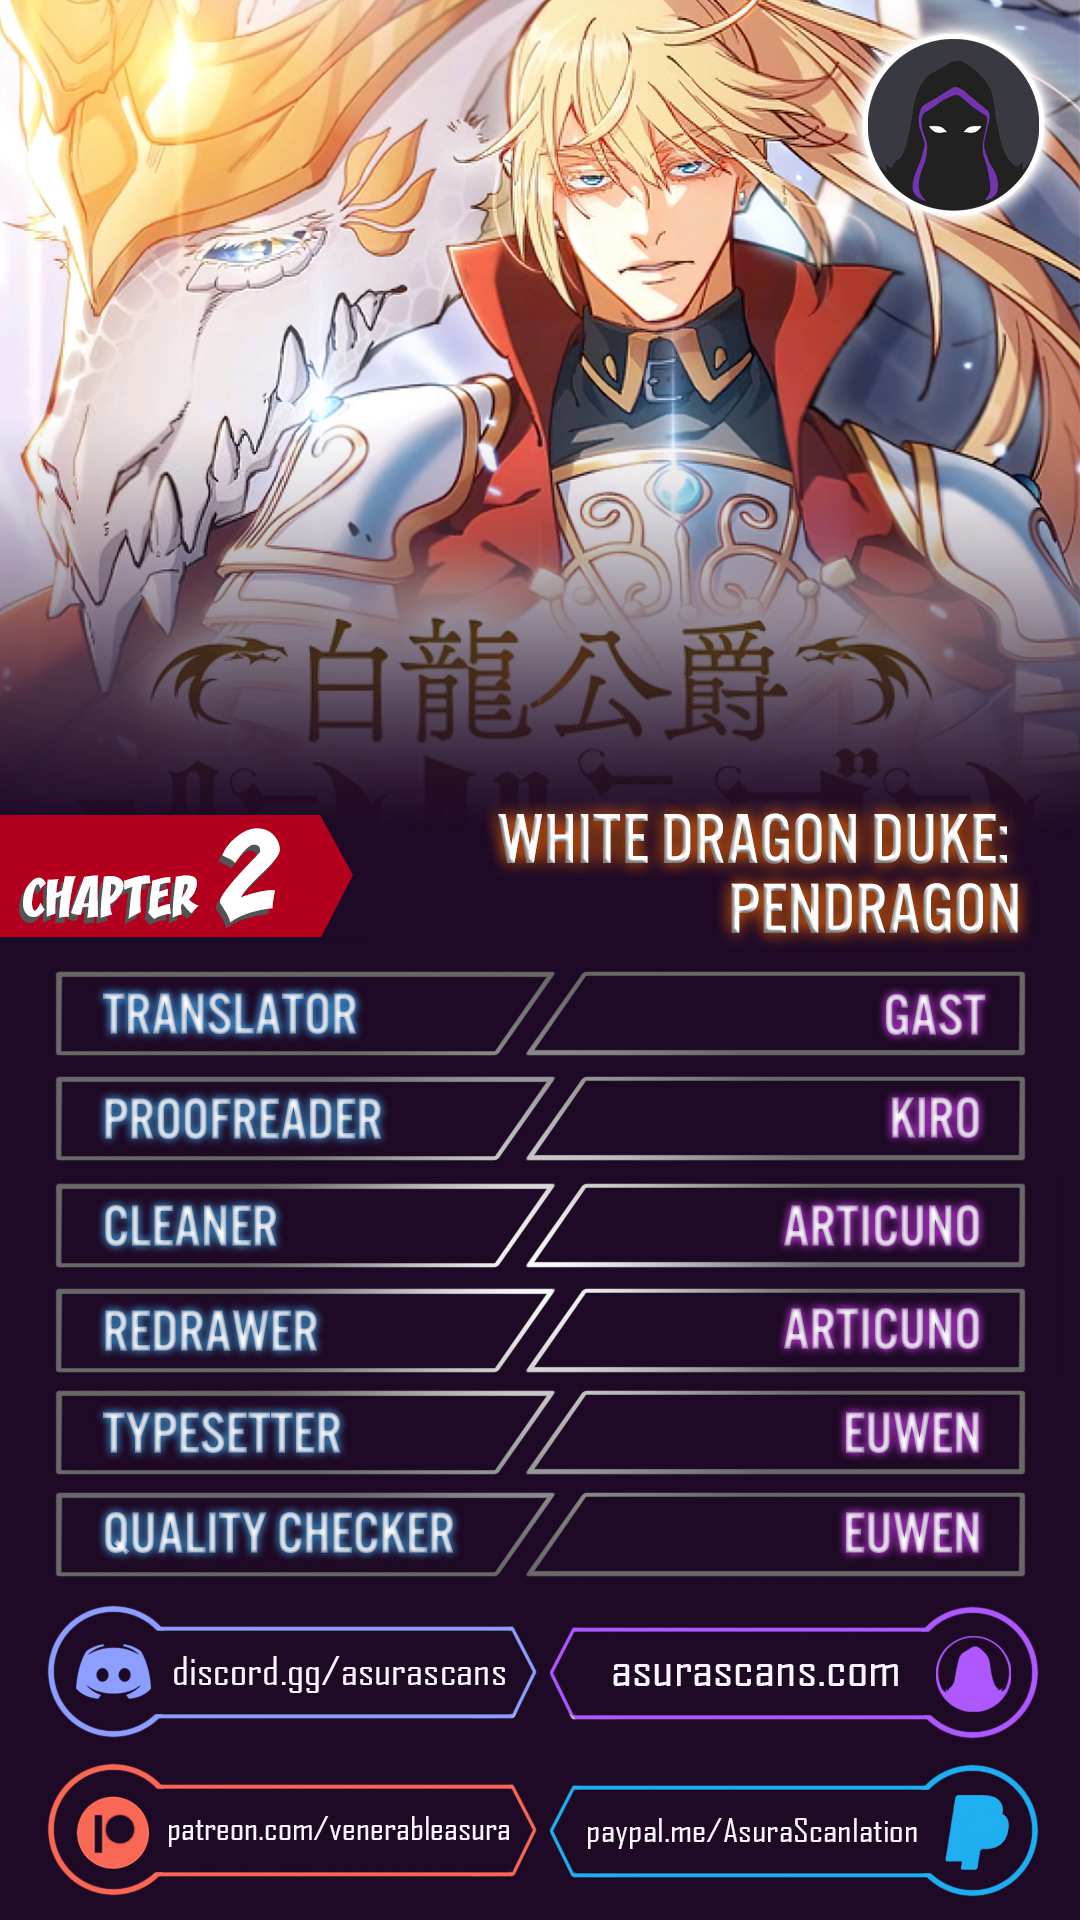 White Dragon Duke: Pendragon chapter 2 page 1